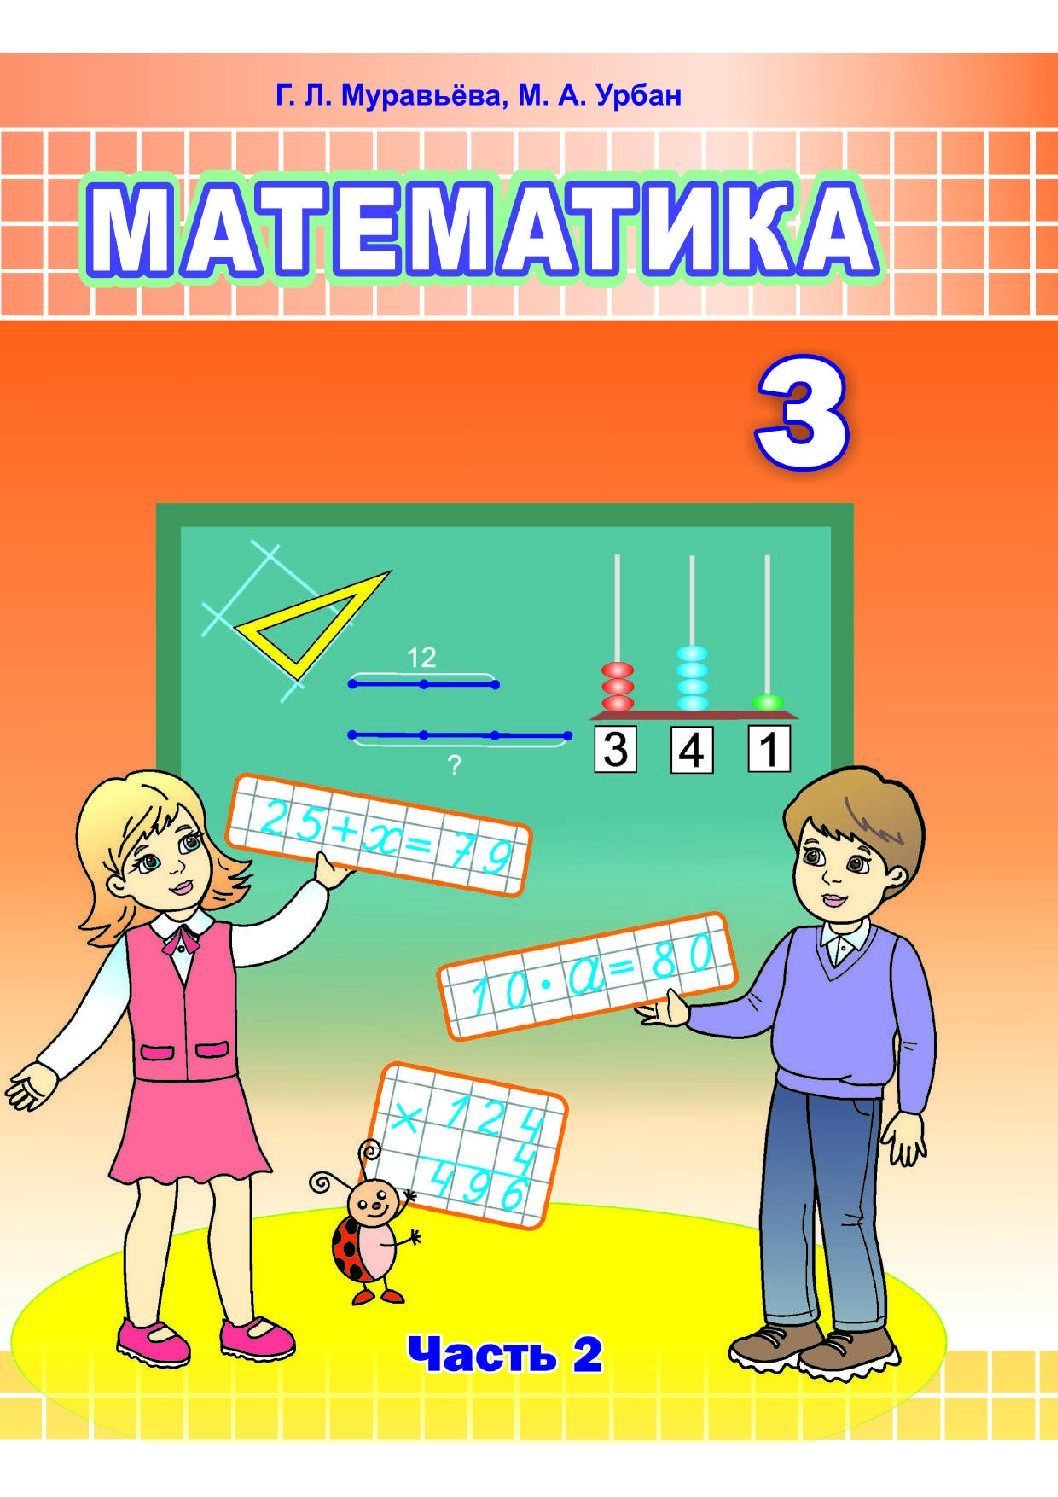 УП.Математика 3 класс: учебное пособие Ч.2